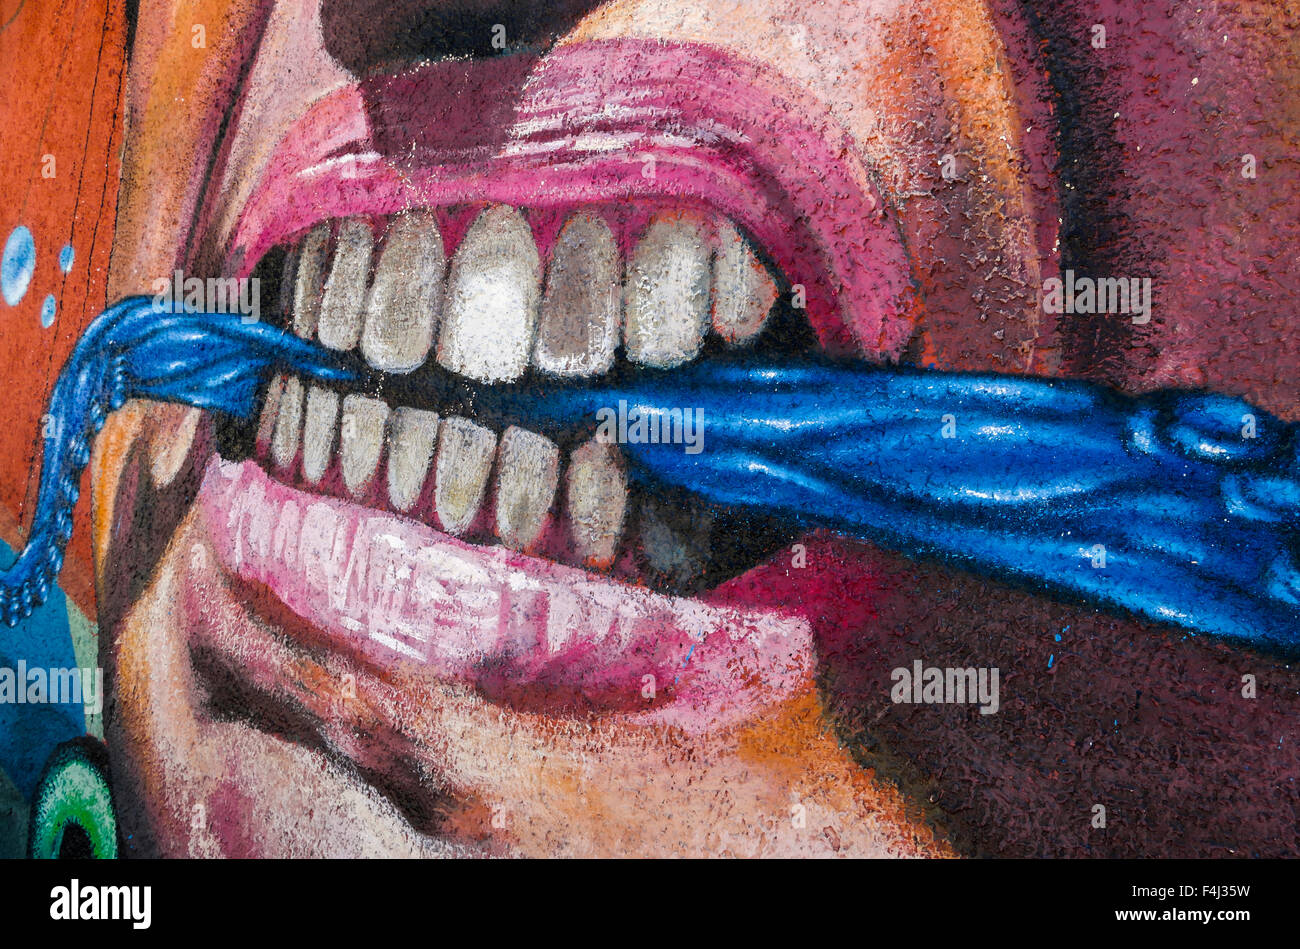 VALPARAISO, CHILI - 29 octobre 2014 : graffiti coloré détail d'un visage agressif avec écharpe entre les dents à Valparaiso Banque D'Images